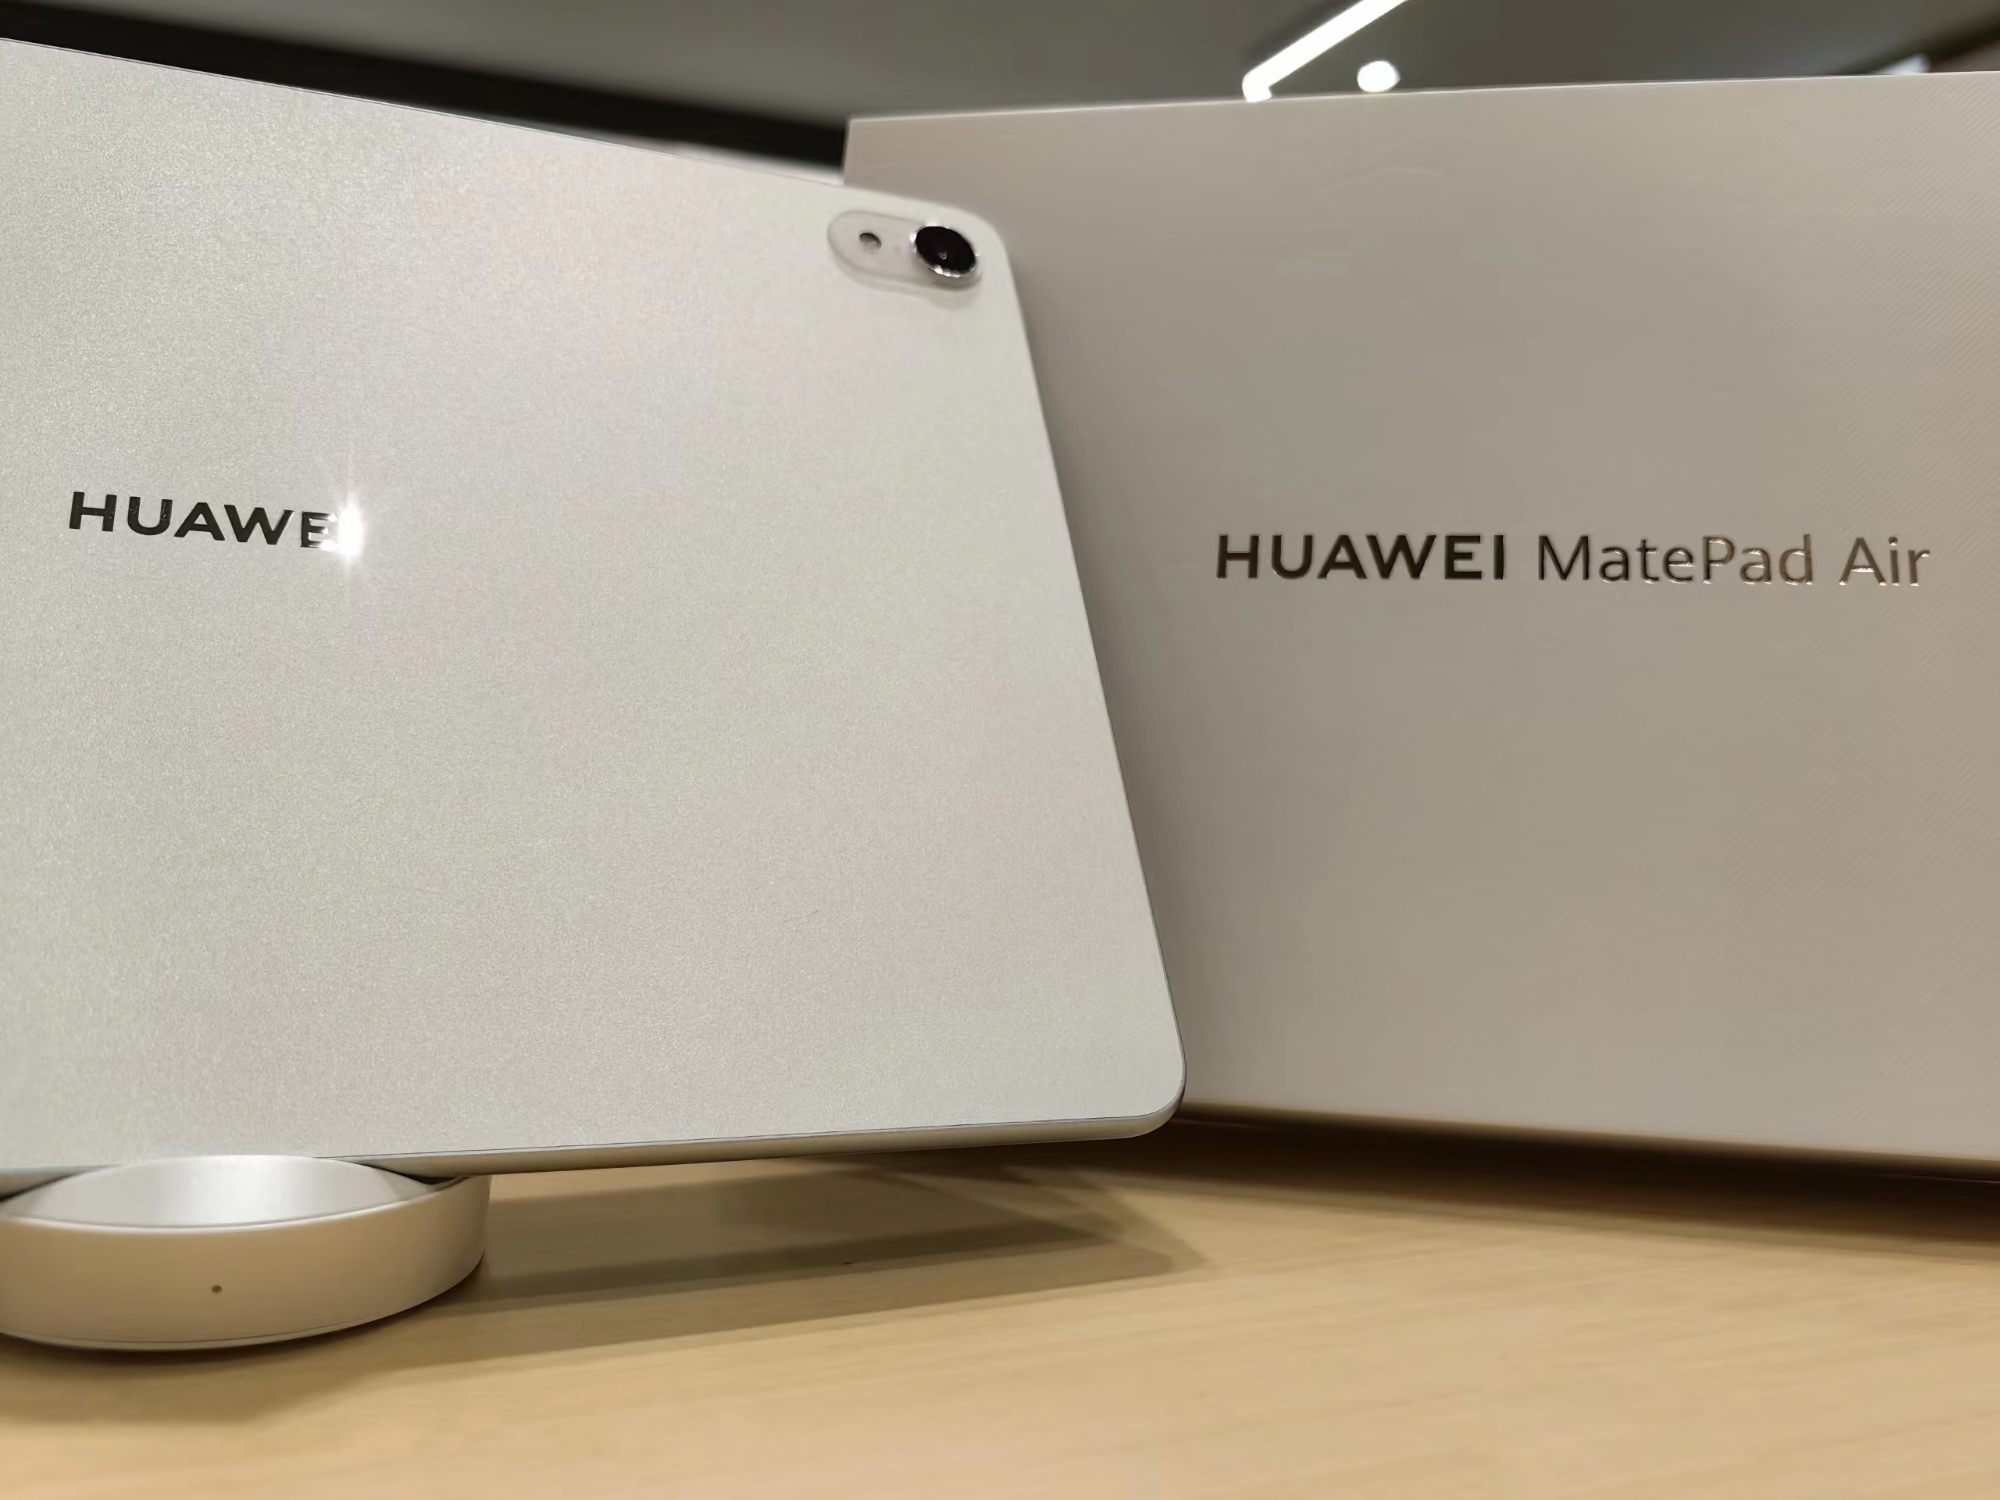 Wyświetlacz 144 Hz, układ Snapdragon 888 i aparat główny z lampą błyskową LED: specyfikacja i zdjęcia Huawei MatePad Air wypłynęły do sieci